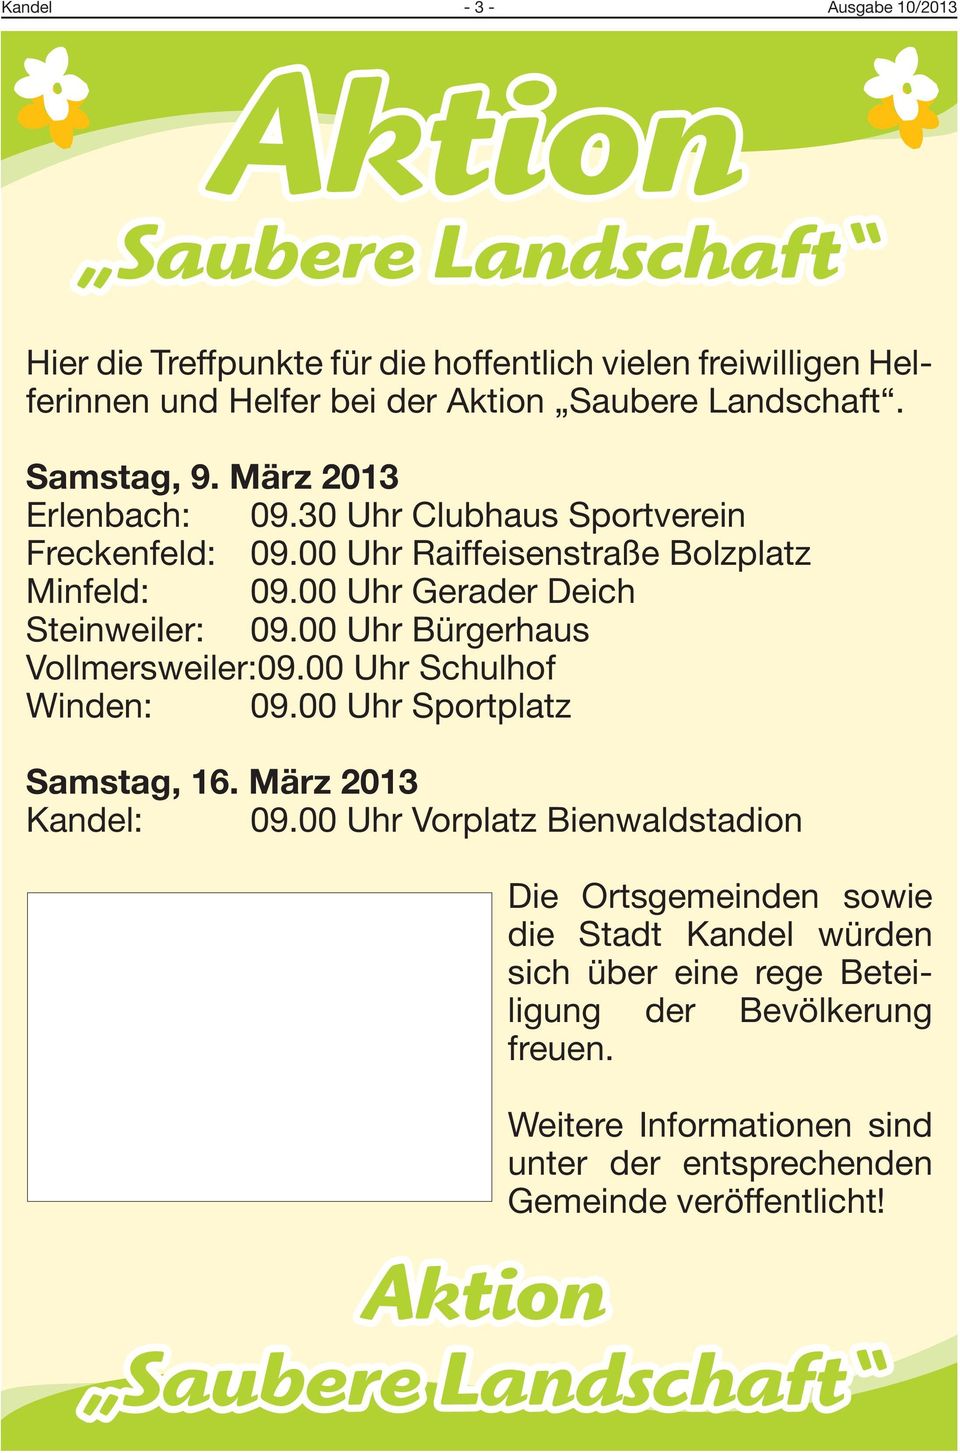 00 Uhr Bürgerhaus Vollmersweiler: 09.00 Uhr Schulhof Winden: 09.00 Uhr Sportplatz Samstag, 16. März 2013 Kandel: 09.